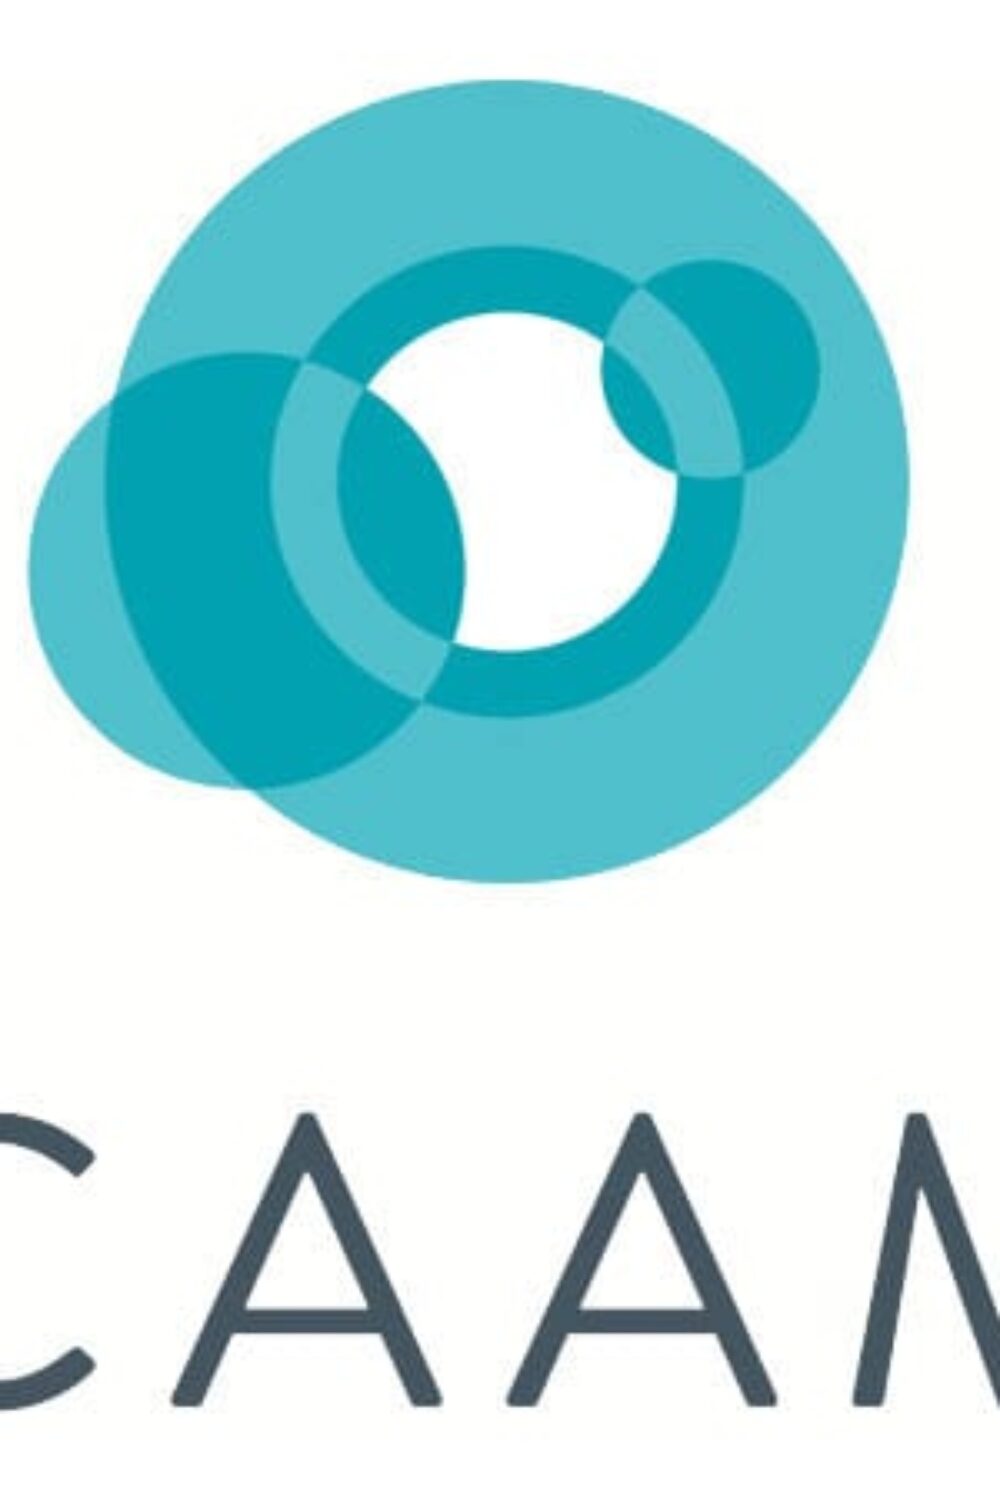 CAAM logo